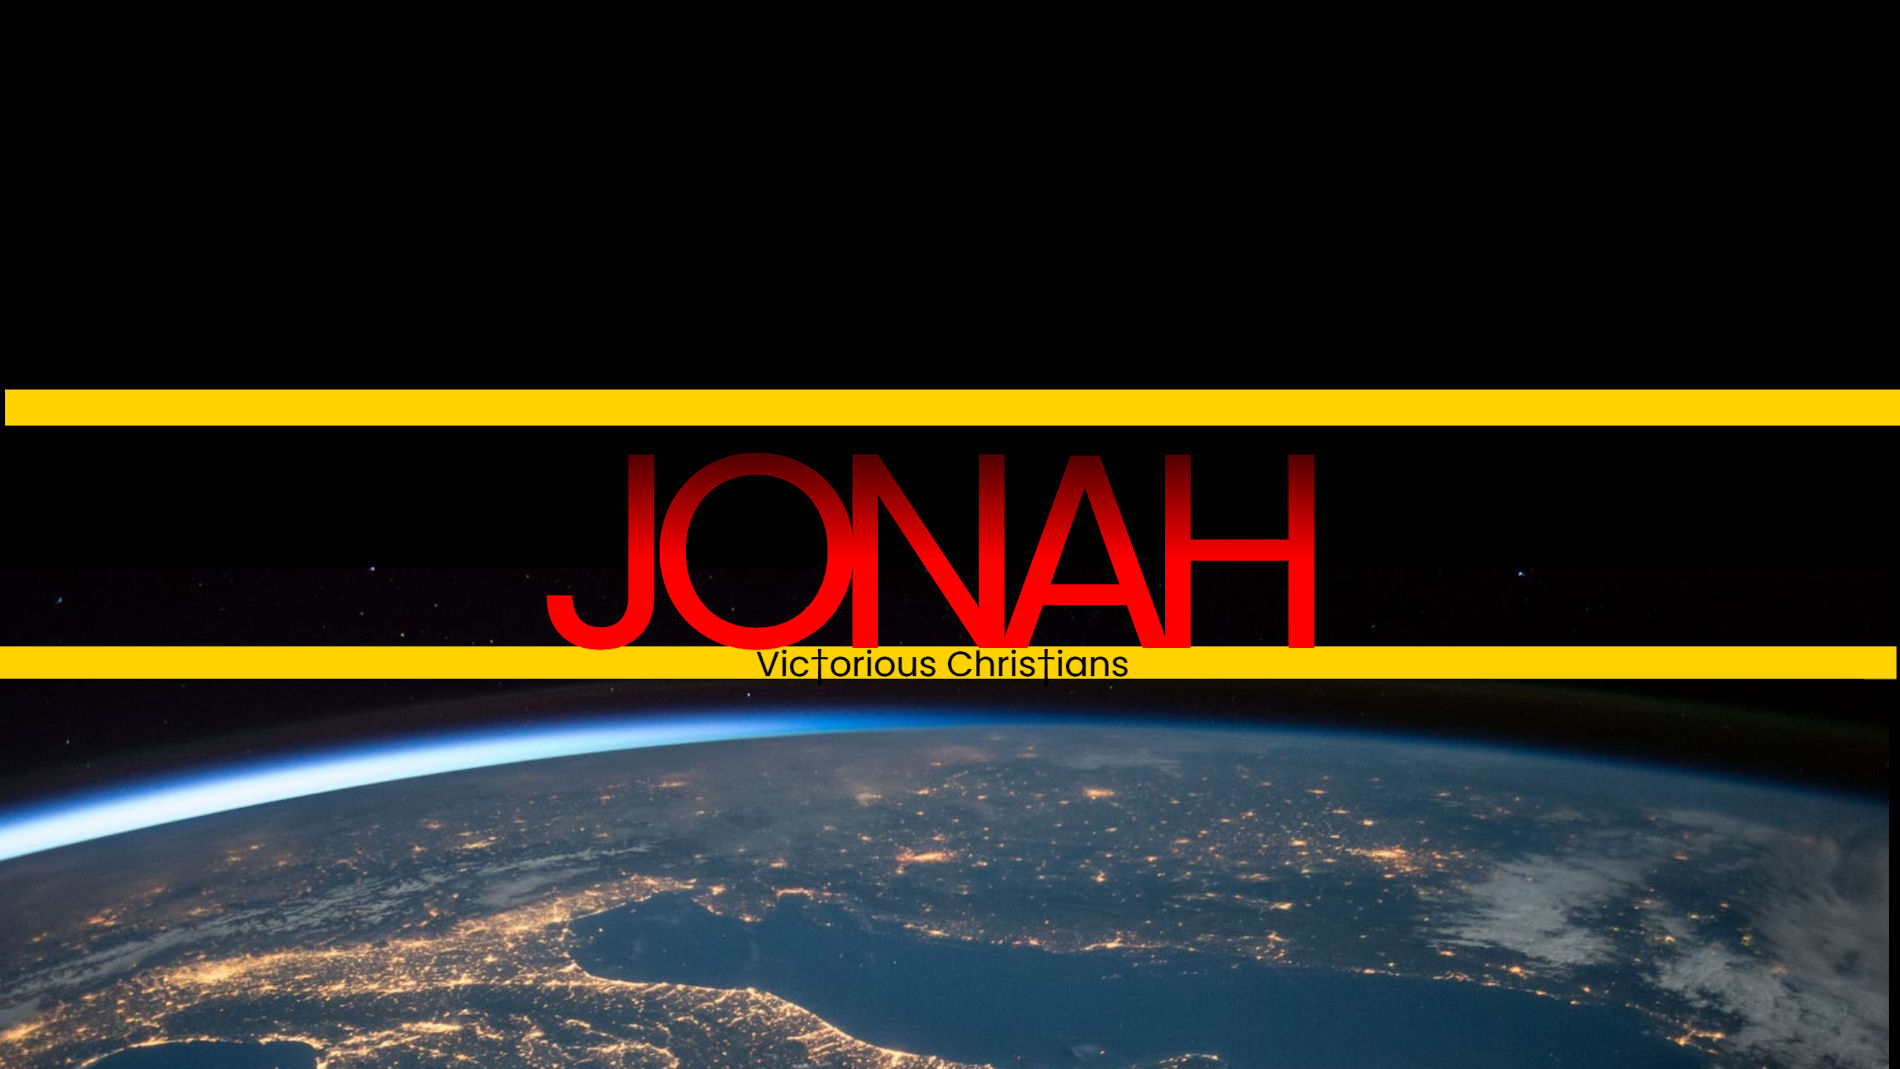 Book of Johah